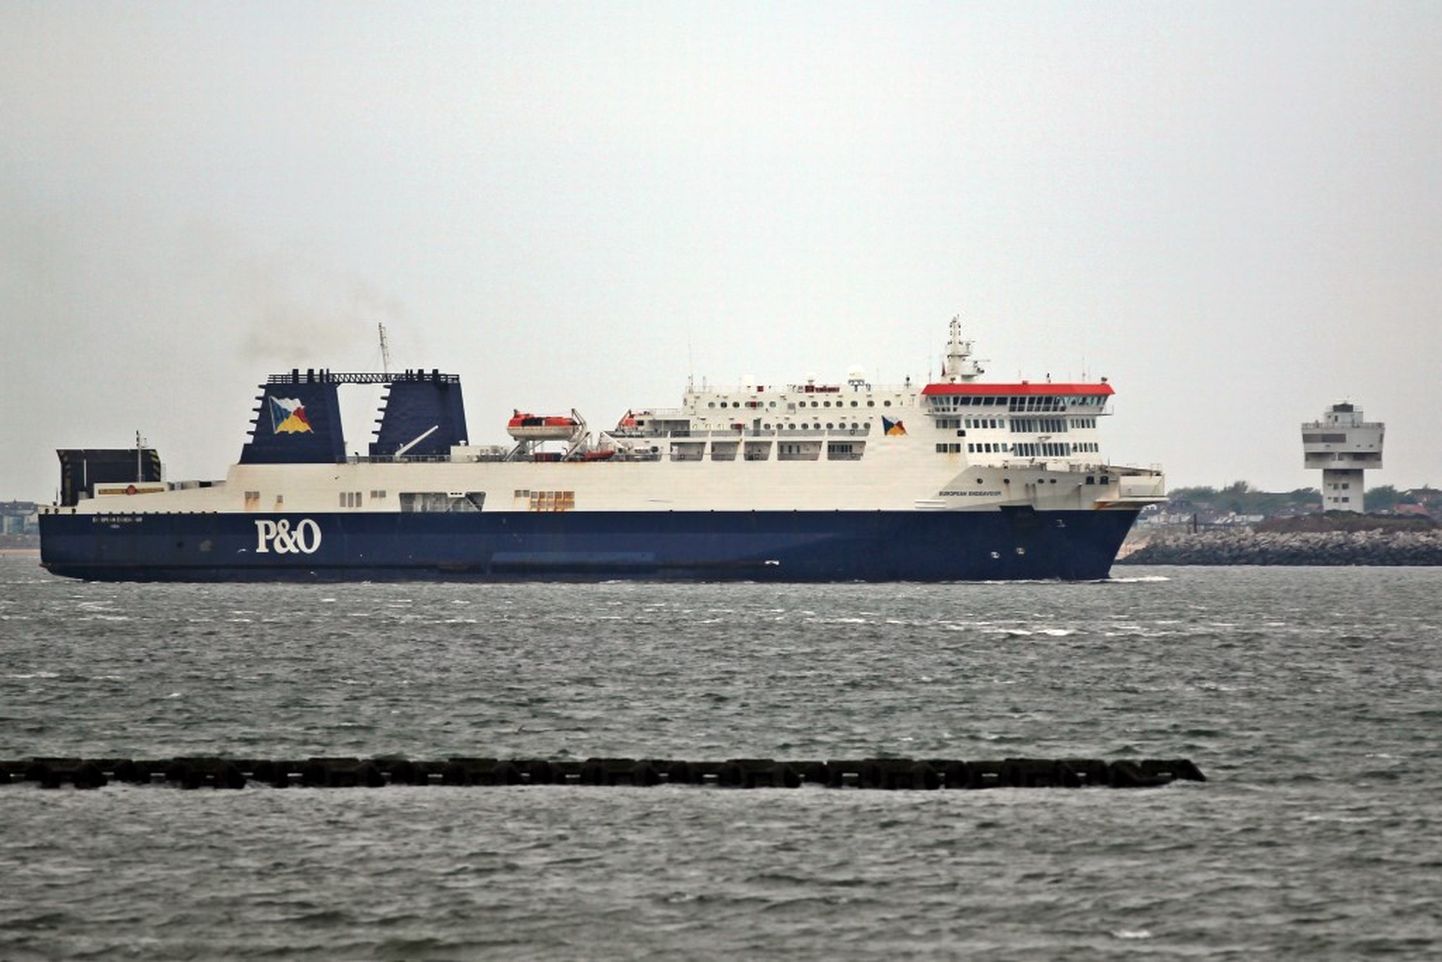 Eckerö Line soetas Tallinn-Helsingi liinile kaubalaeva laeva European Endeavour